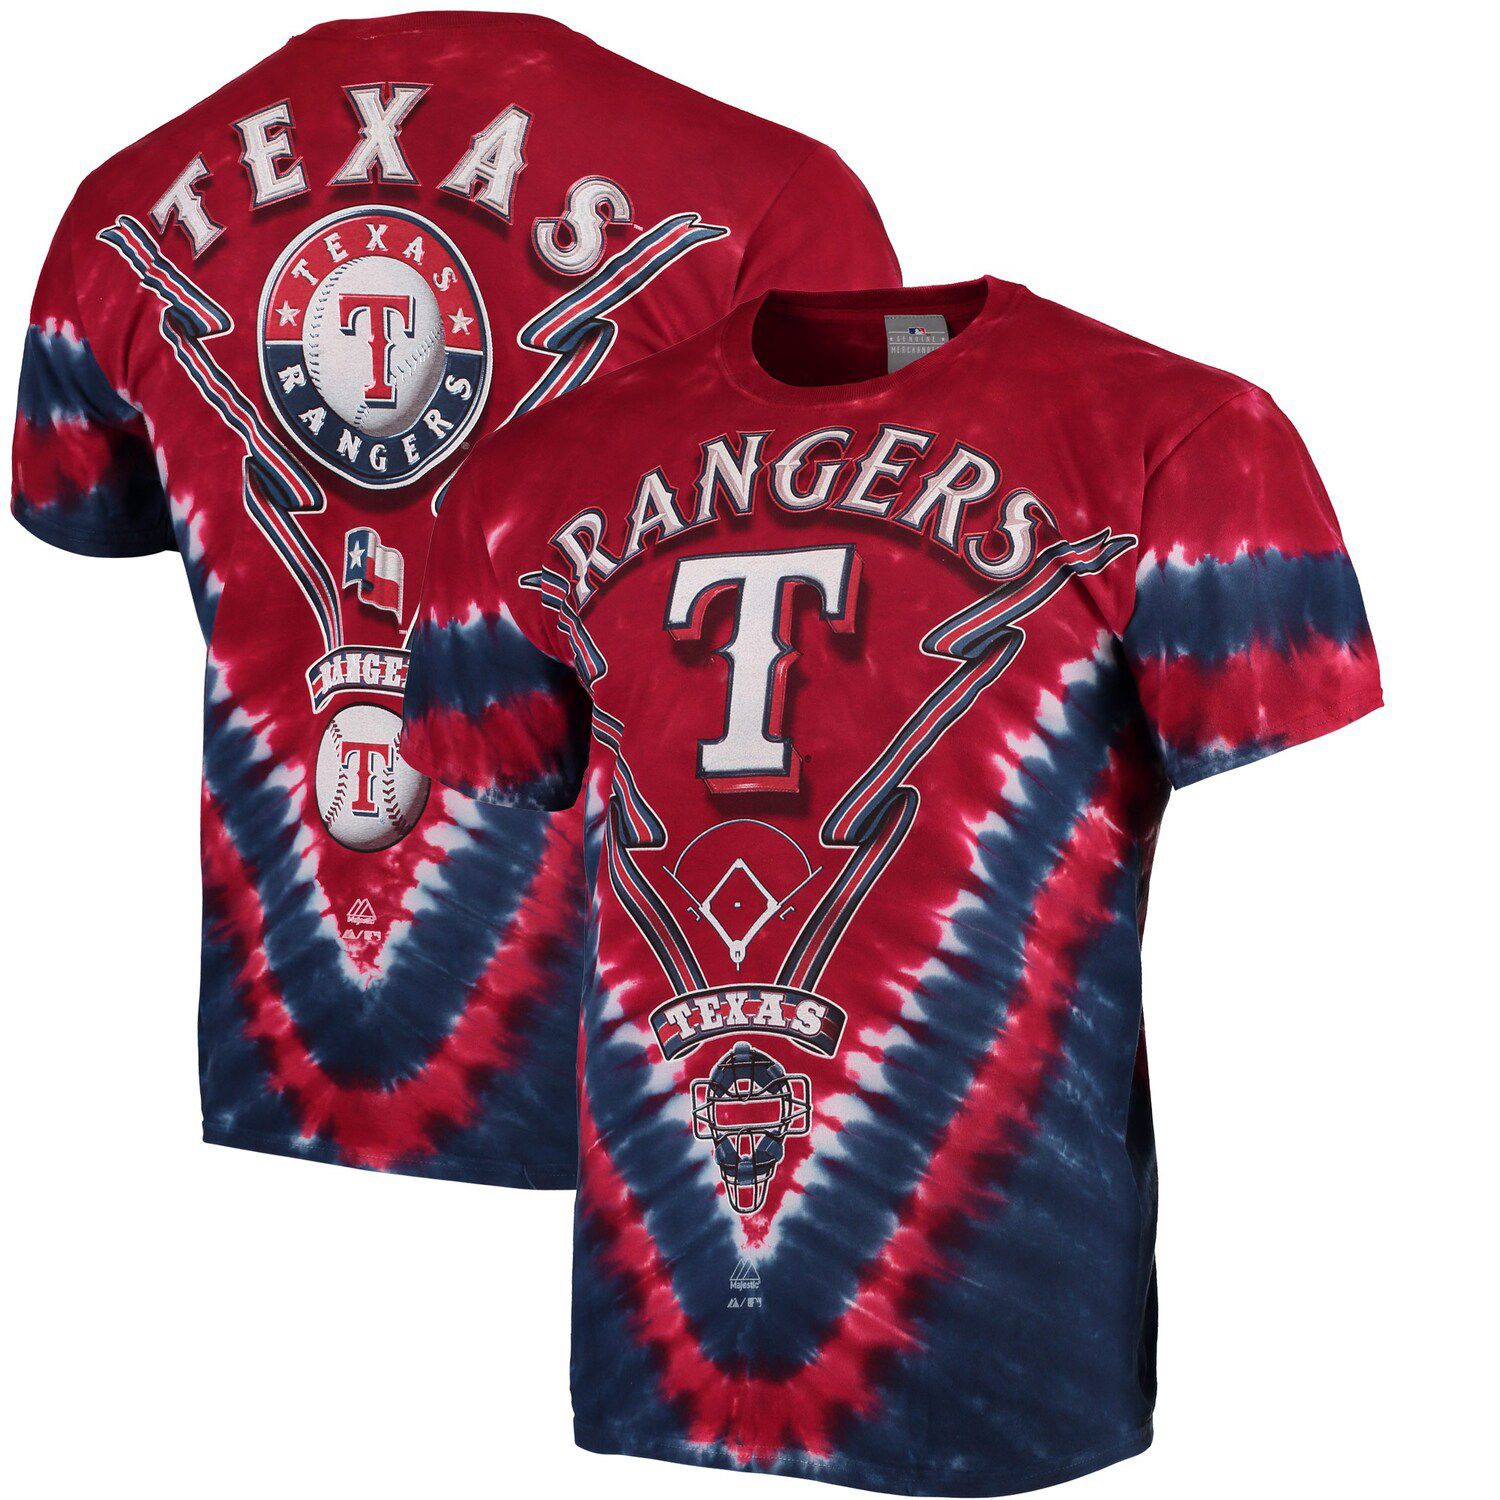 Image for Unbranded Men's Red/Navy Texas Rangers V Tie-Dye T-Shirt at Kohl's.